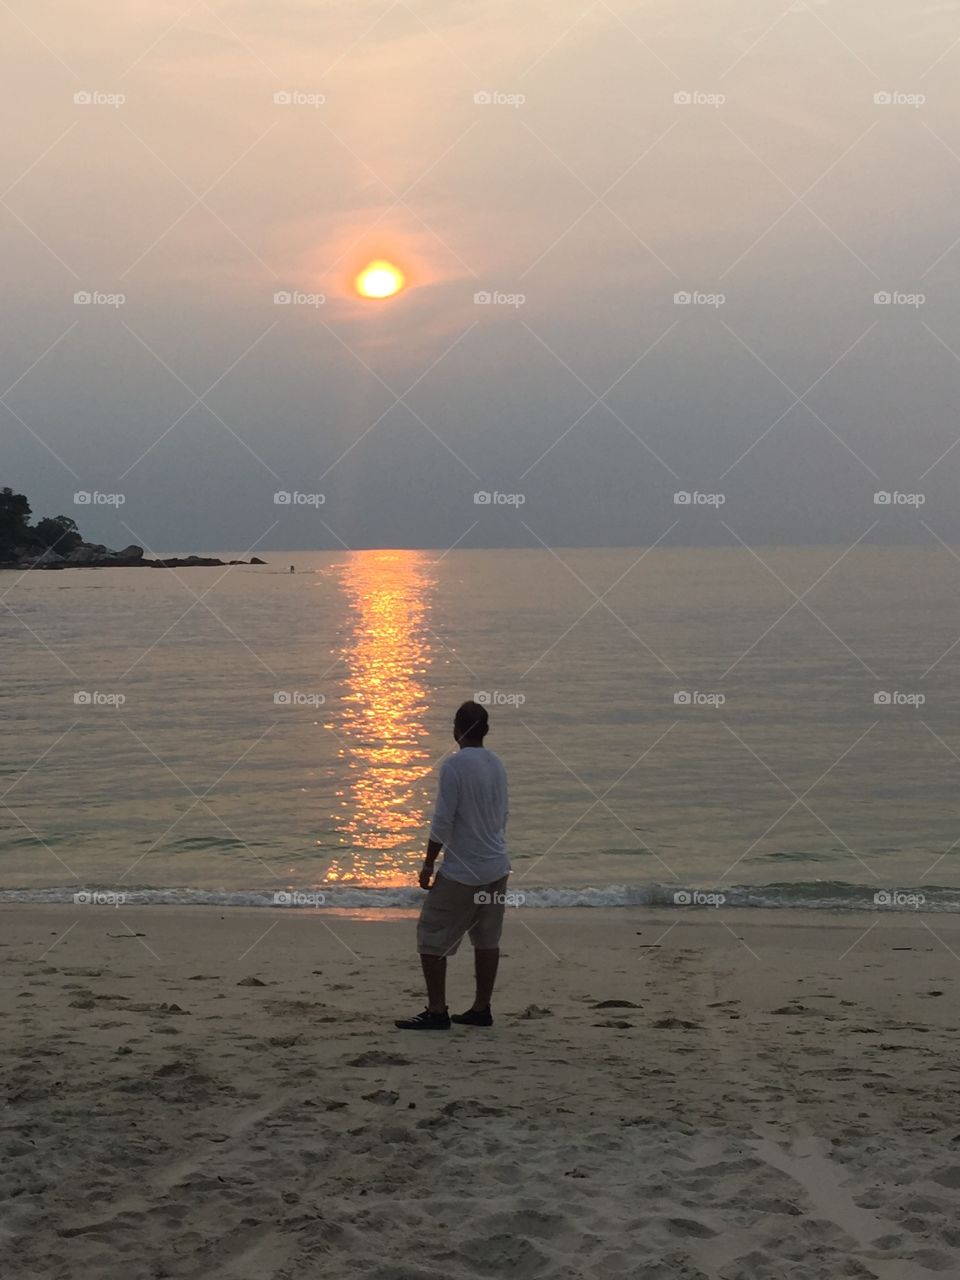 Beach sun reflection. Shot somewhere in Malaysia 